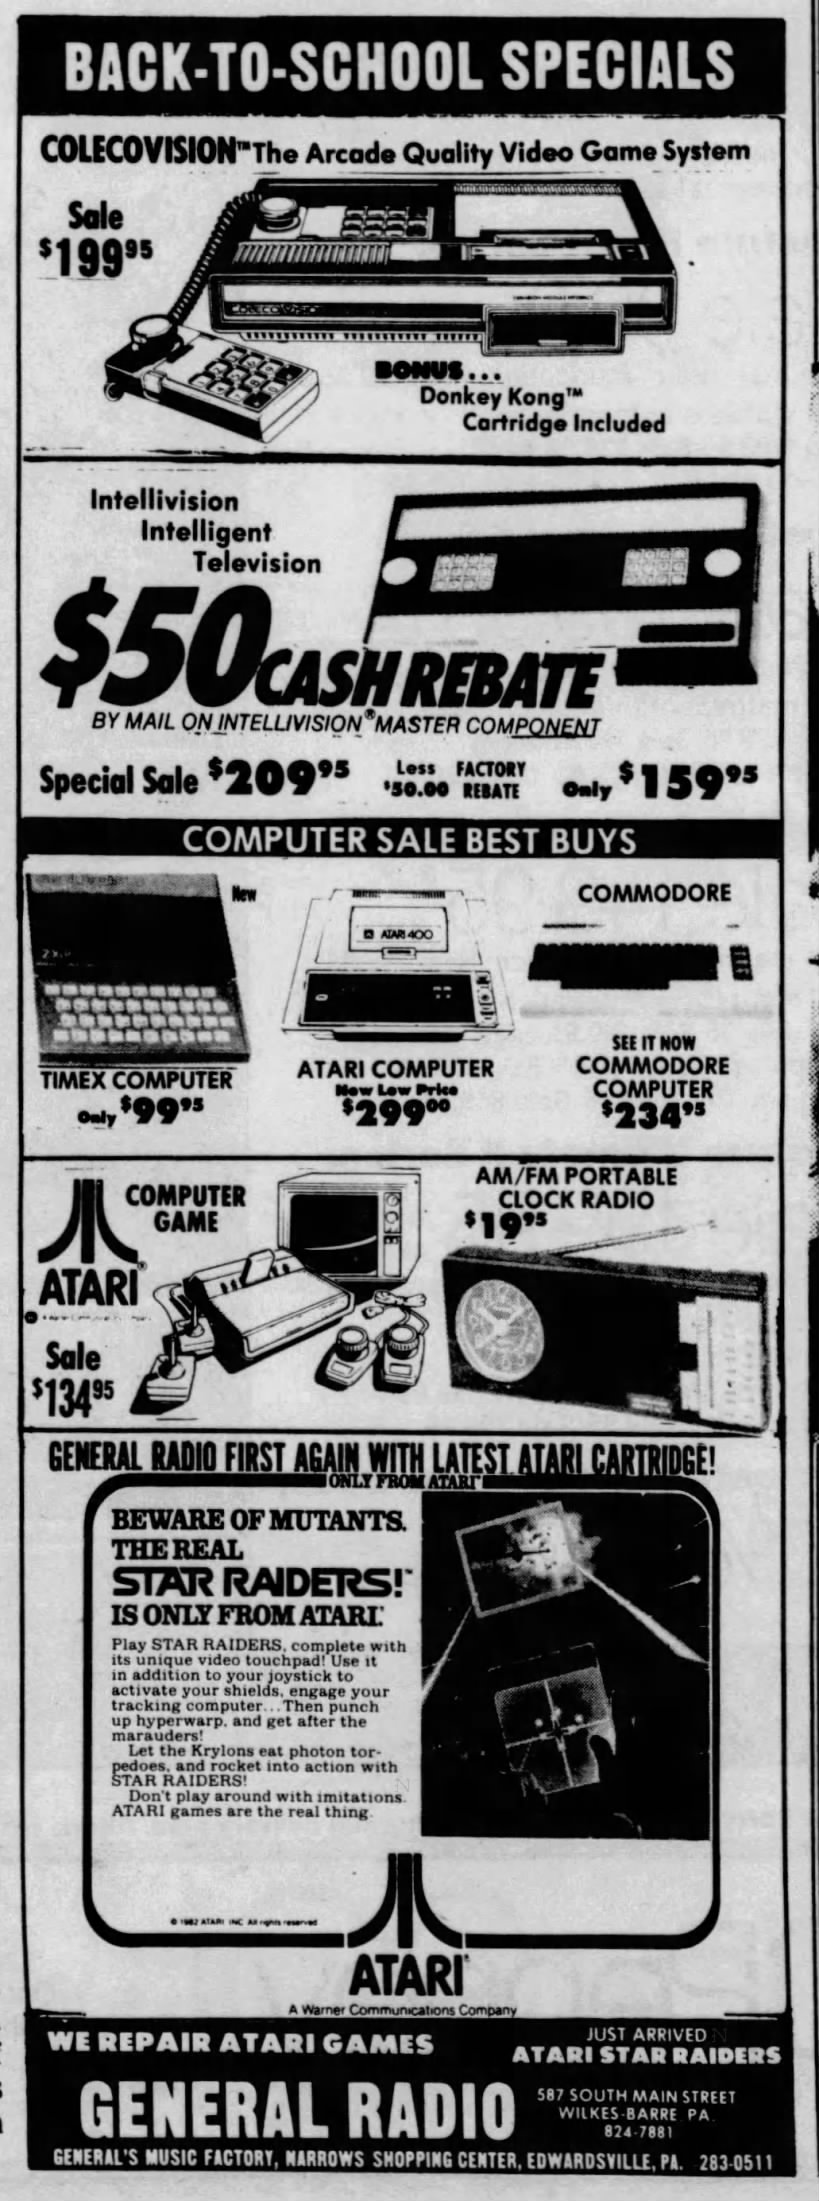 Atari 2600: GENERAL RADIO (Sep 16, 82)